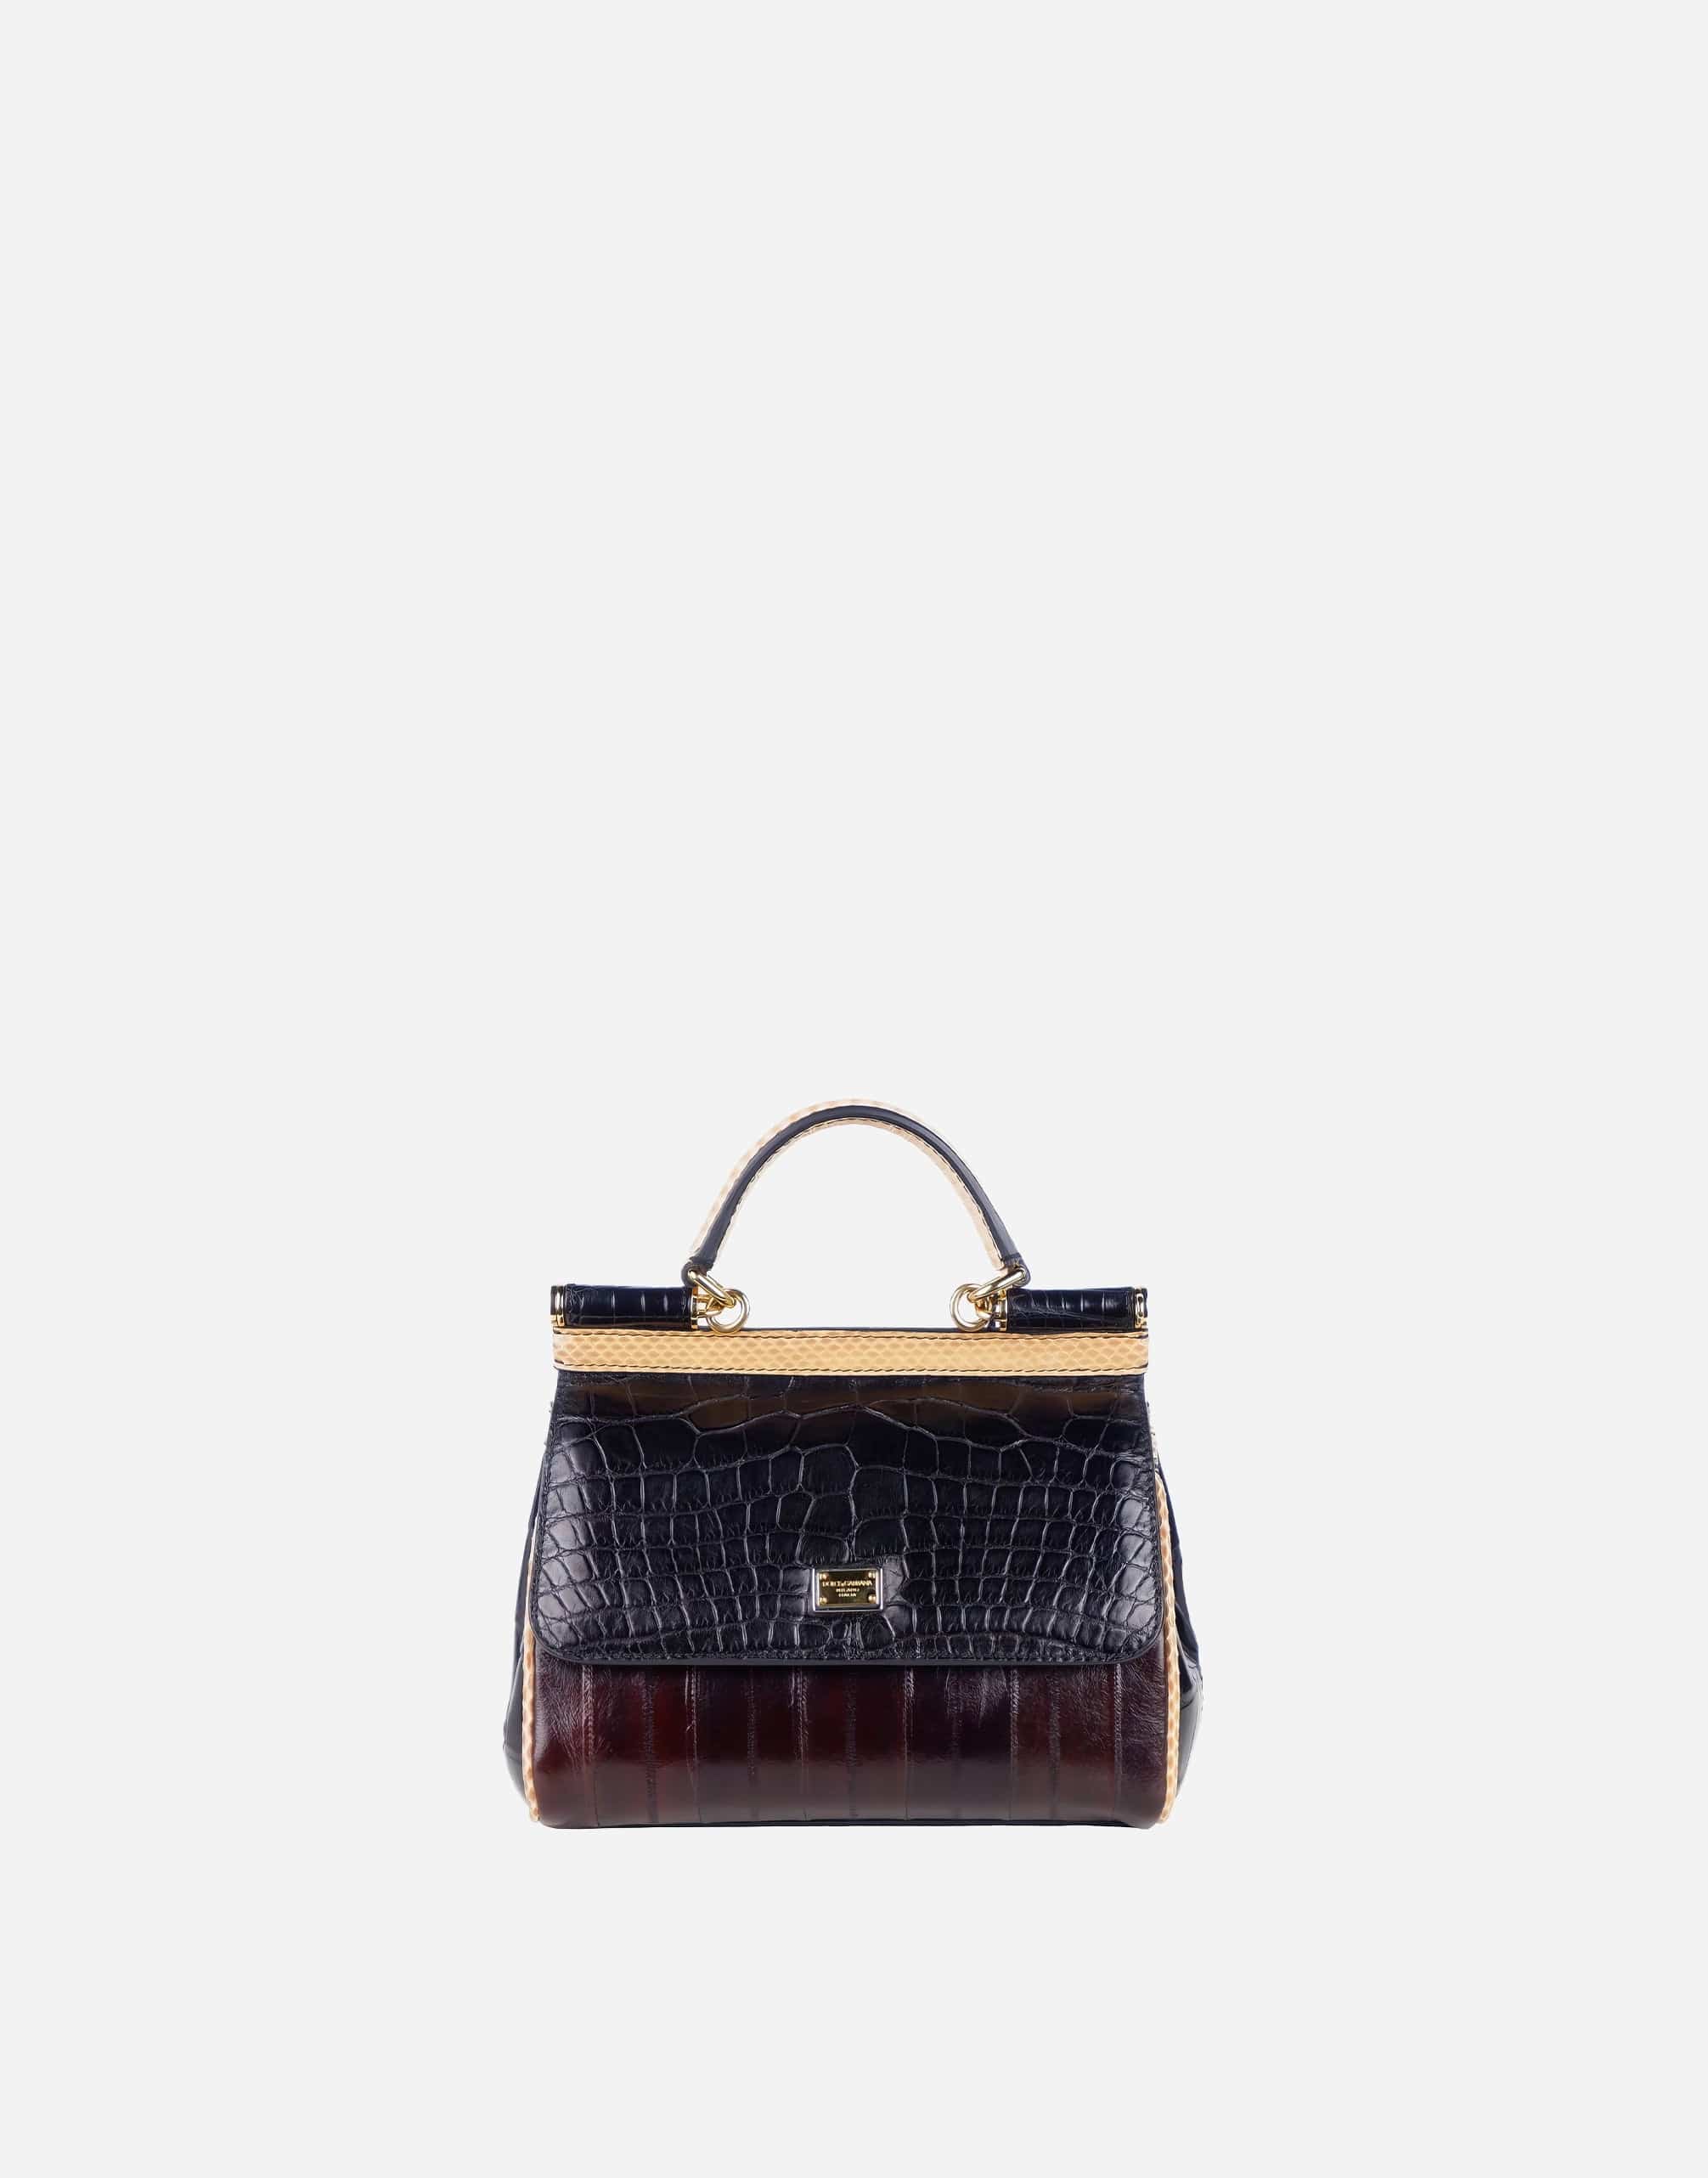 Dolce & Gabbana Multicolor Leather Di Crocodile Handbag